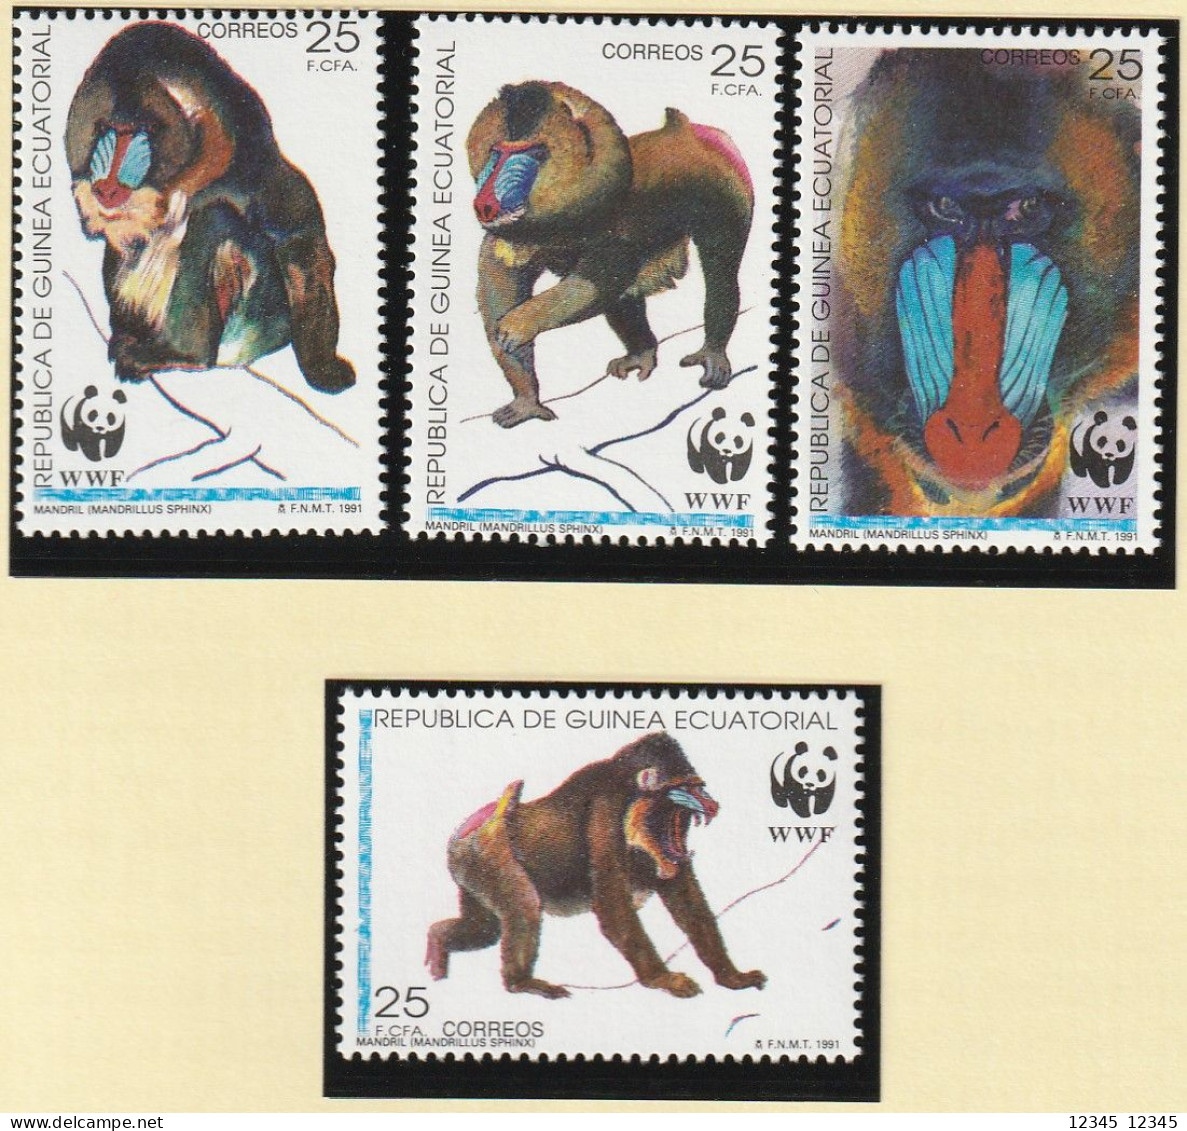 Equatoriaal Guinea 1991, Postfris MNH, WWF, Mandrill - Guinée Equatoriale